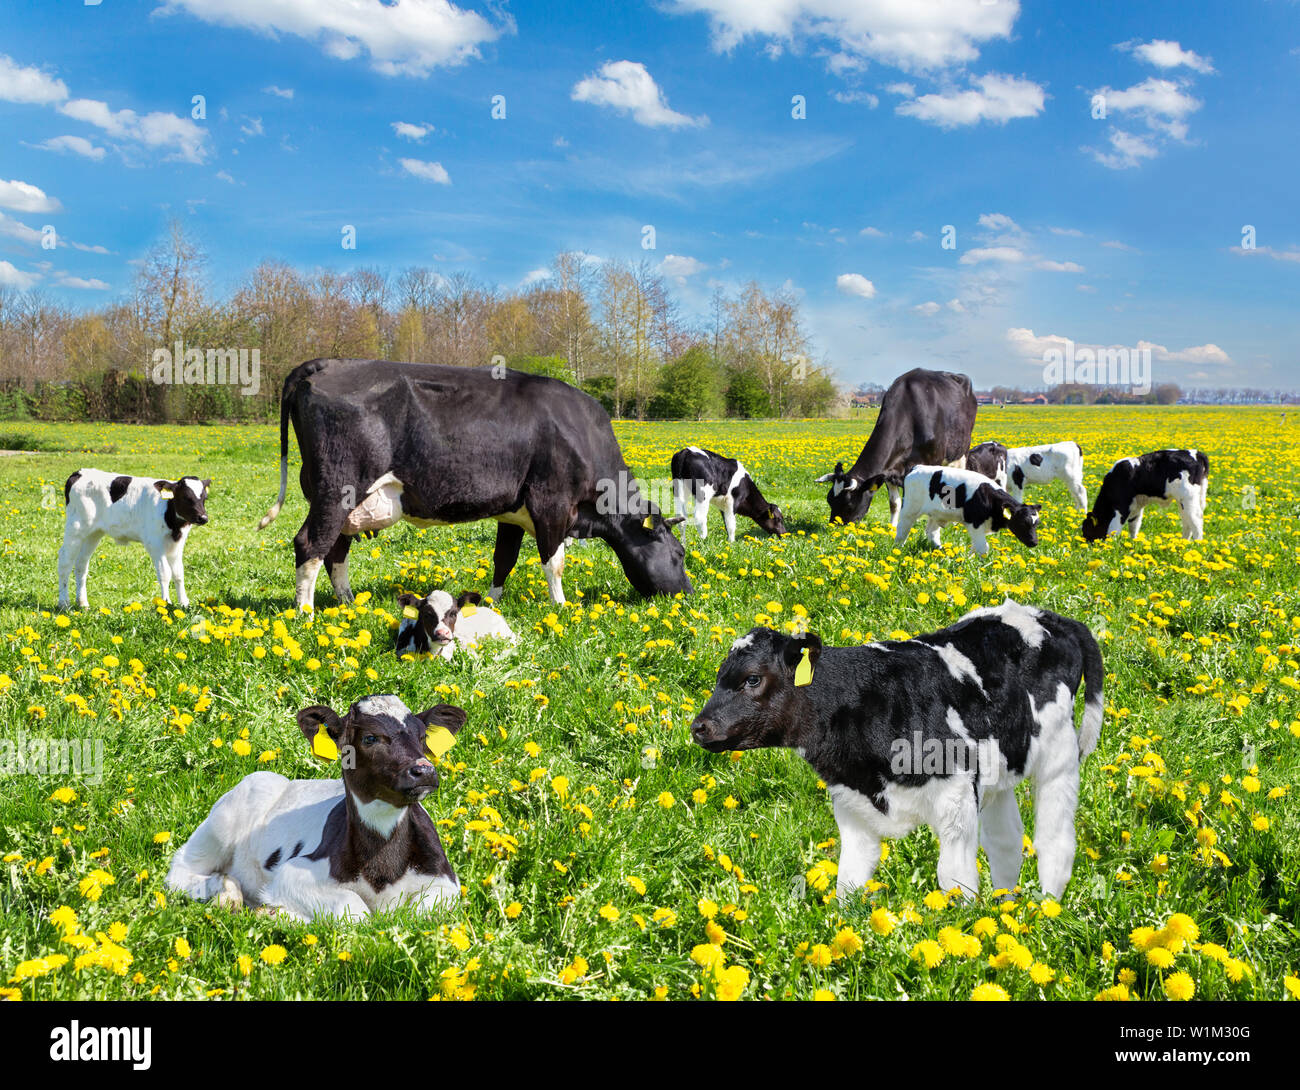 Noir et blanc de bovins et veaux vaches au pâturage avec des pissenlits jaunes Banque D'Images